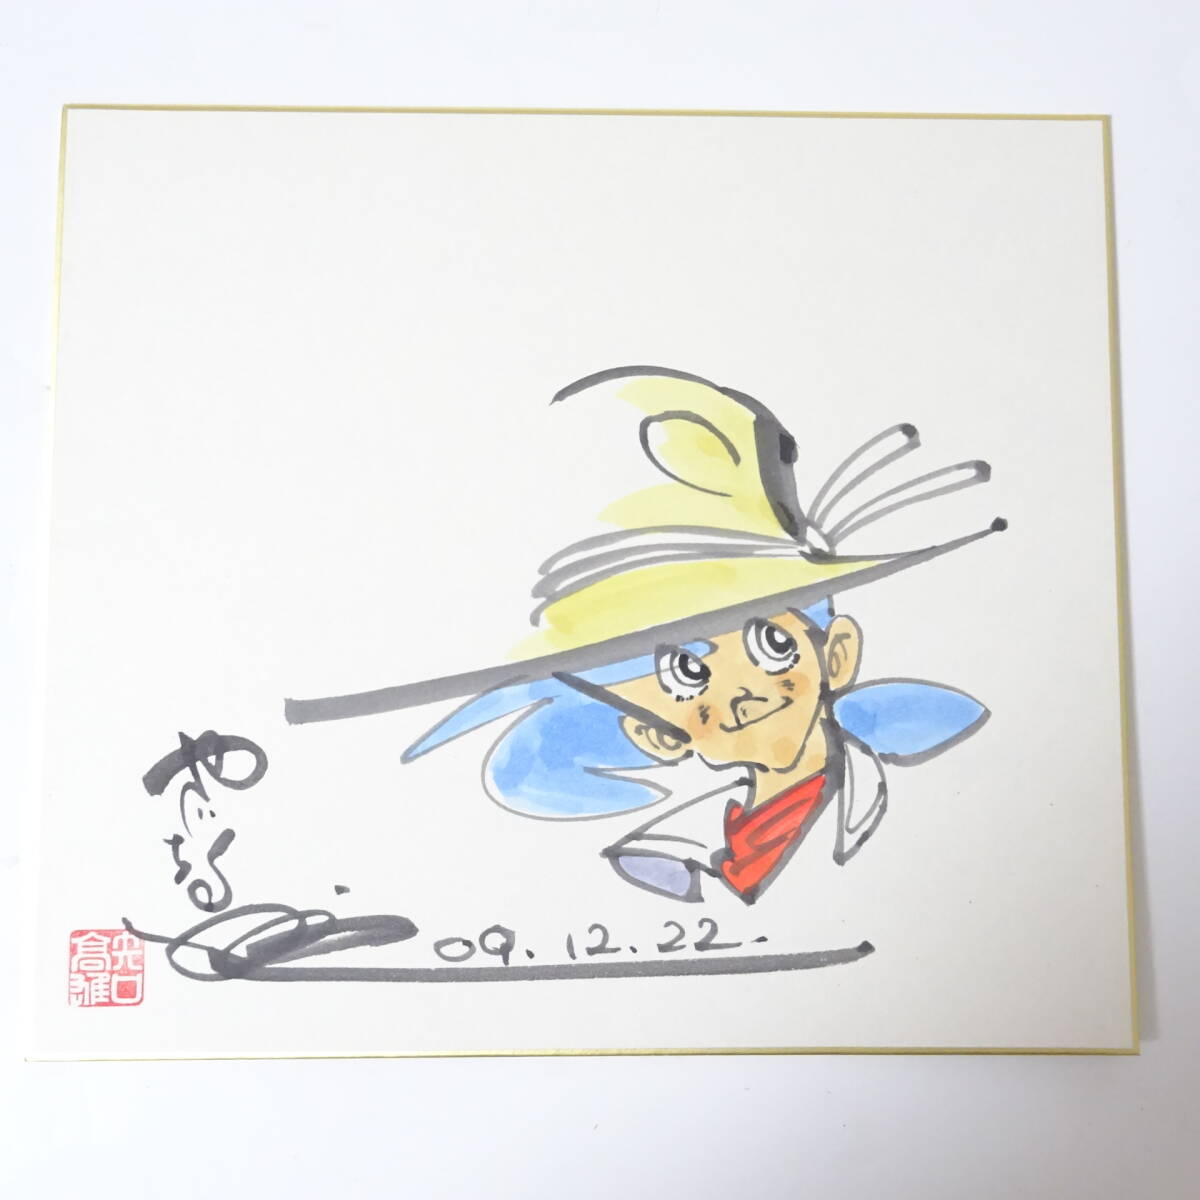 ④ Tsurikichi Sanpei Yaguchi высота самец 2009 год автограф карточка для автографов, стихов, пожеланий др. сумма есть 3 пункт .. фирма комикс манга иллюстрации . ввод 140 размер отправка KK-2684403-42-mrrz